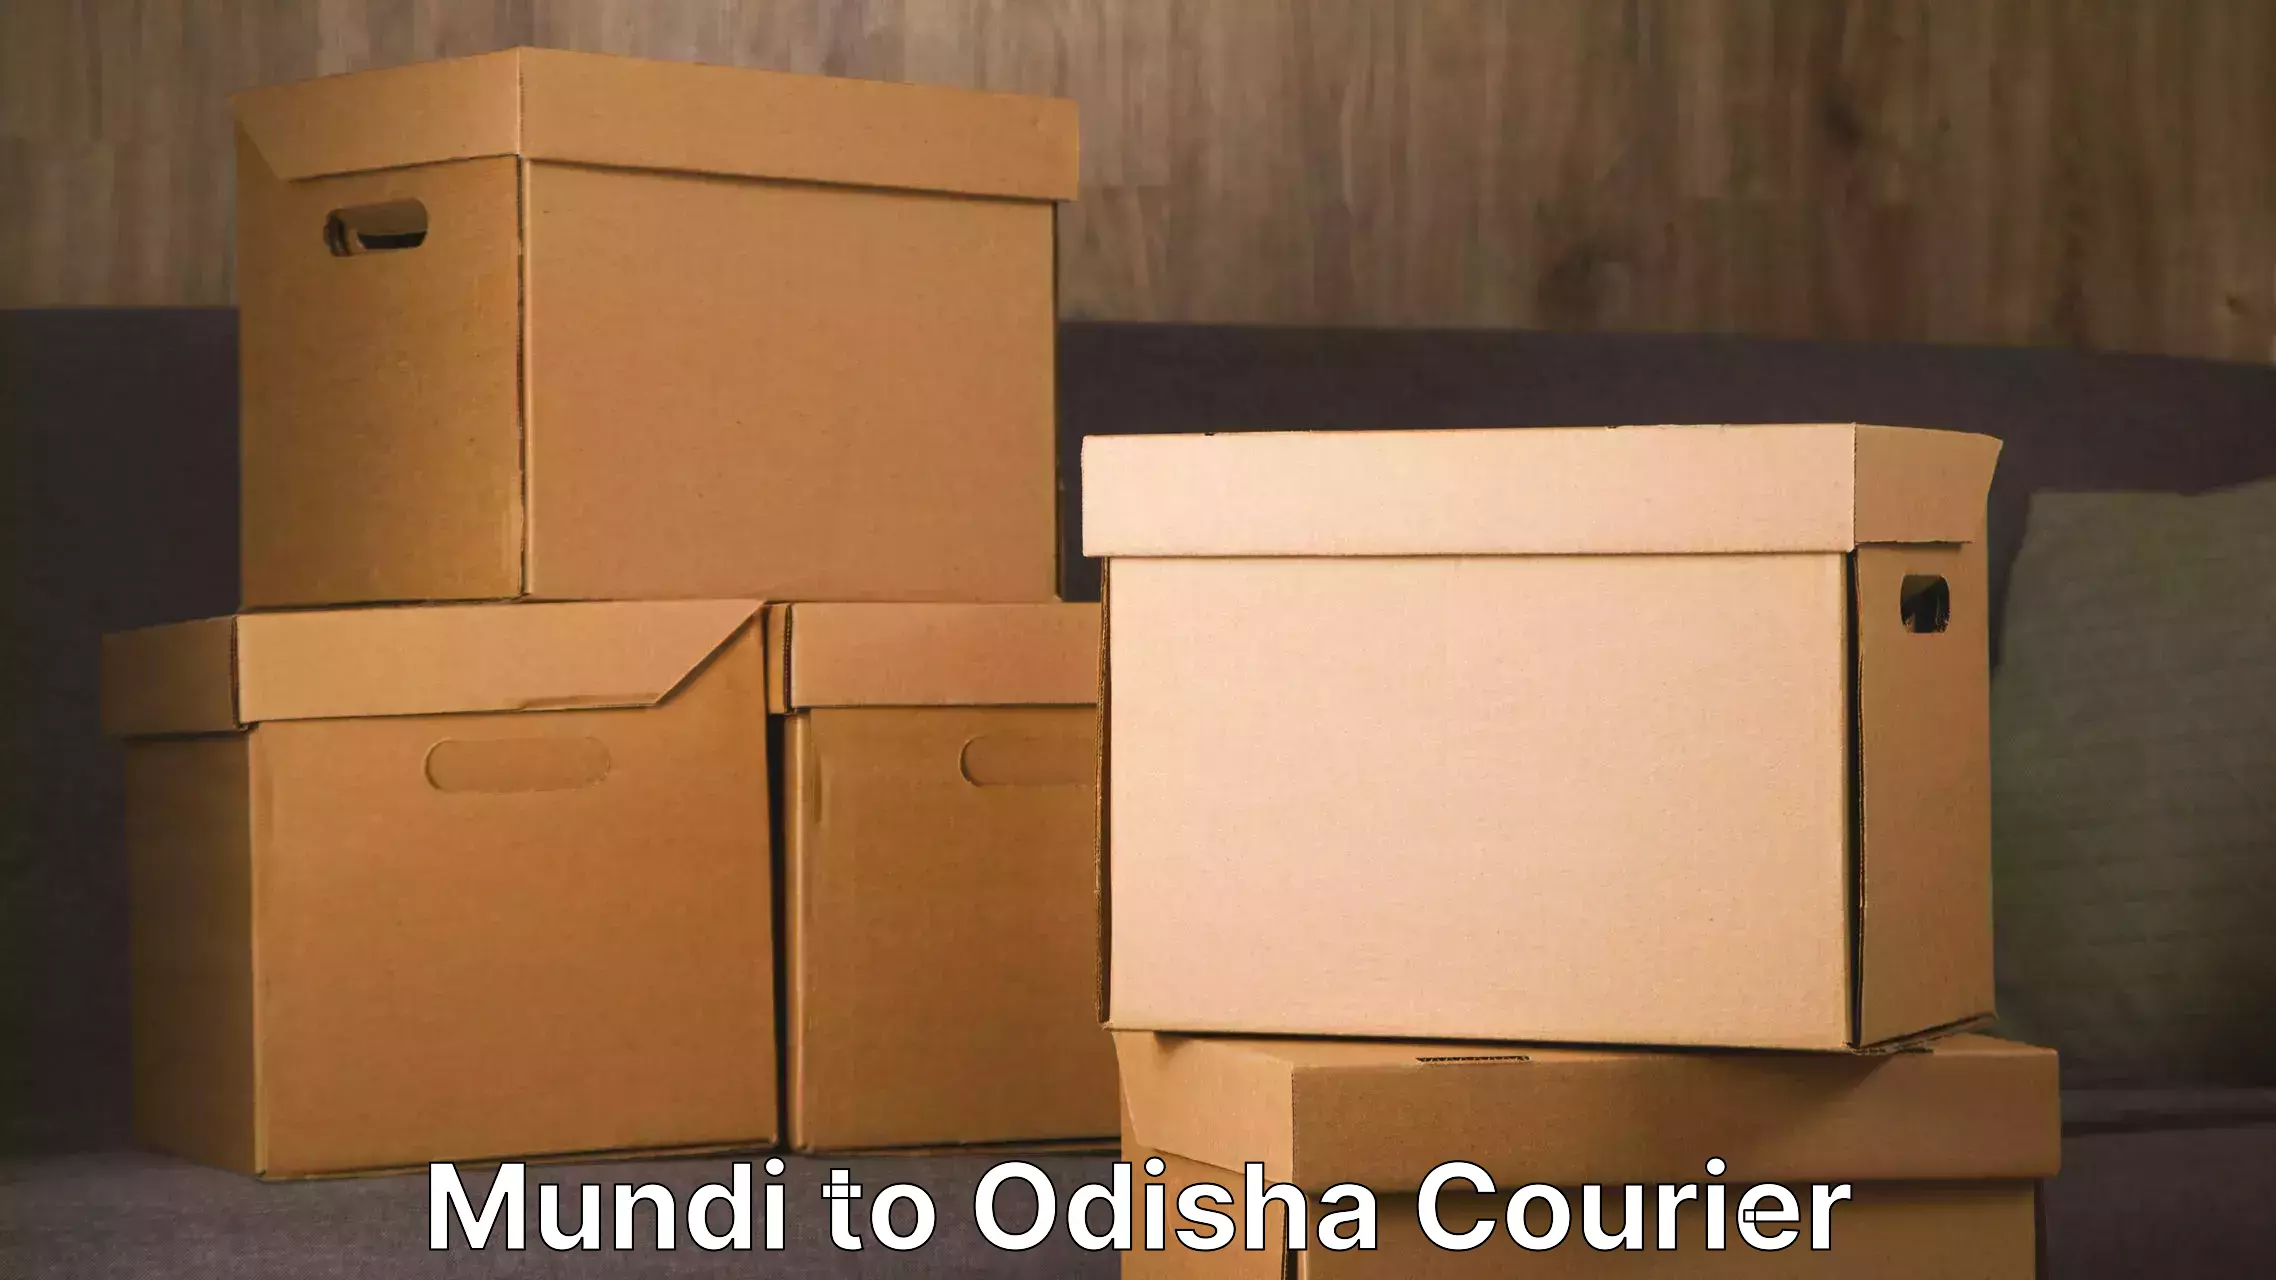 Professional furniture relocation in Mundi to Gajapati